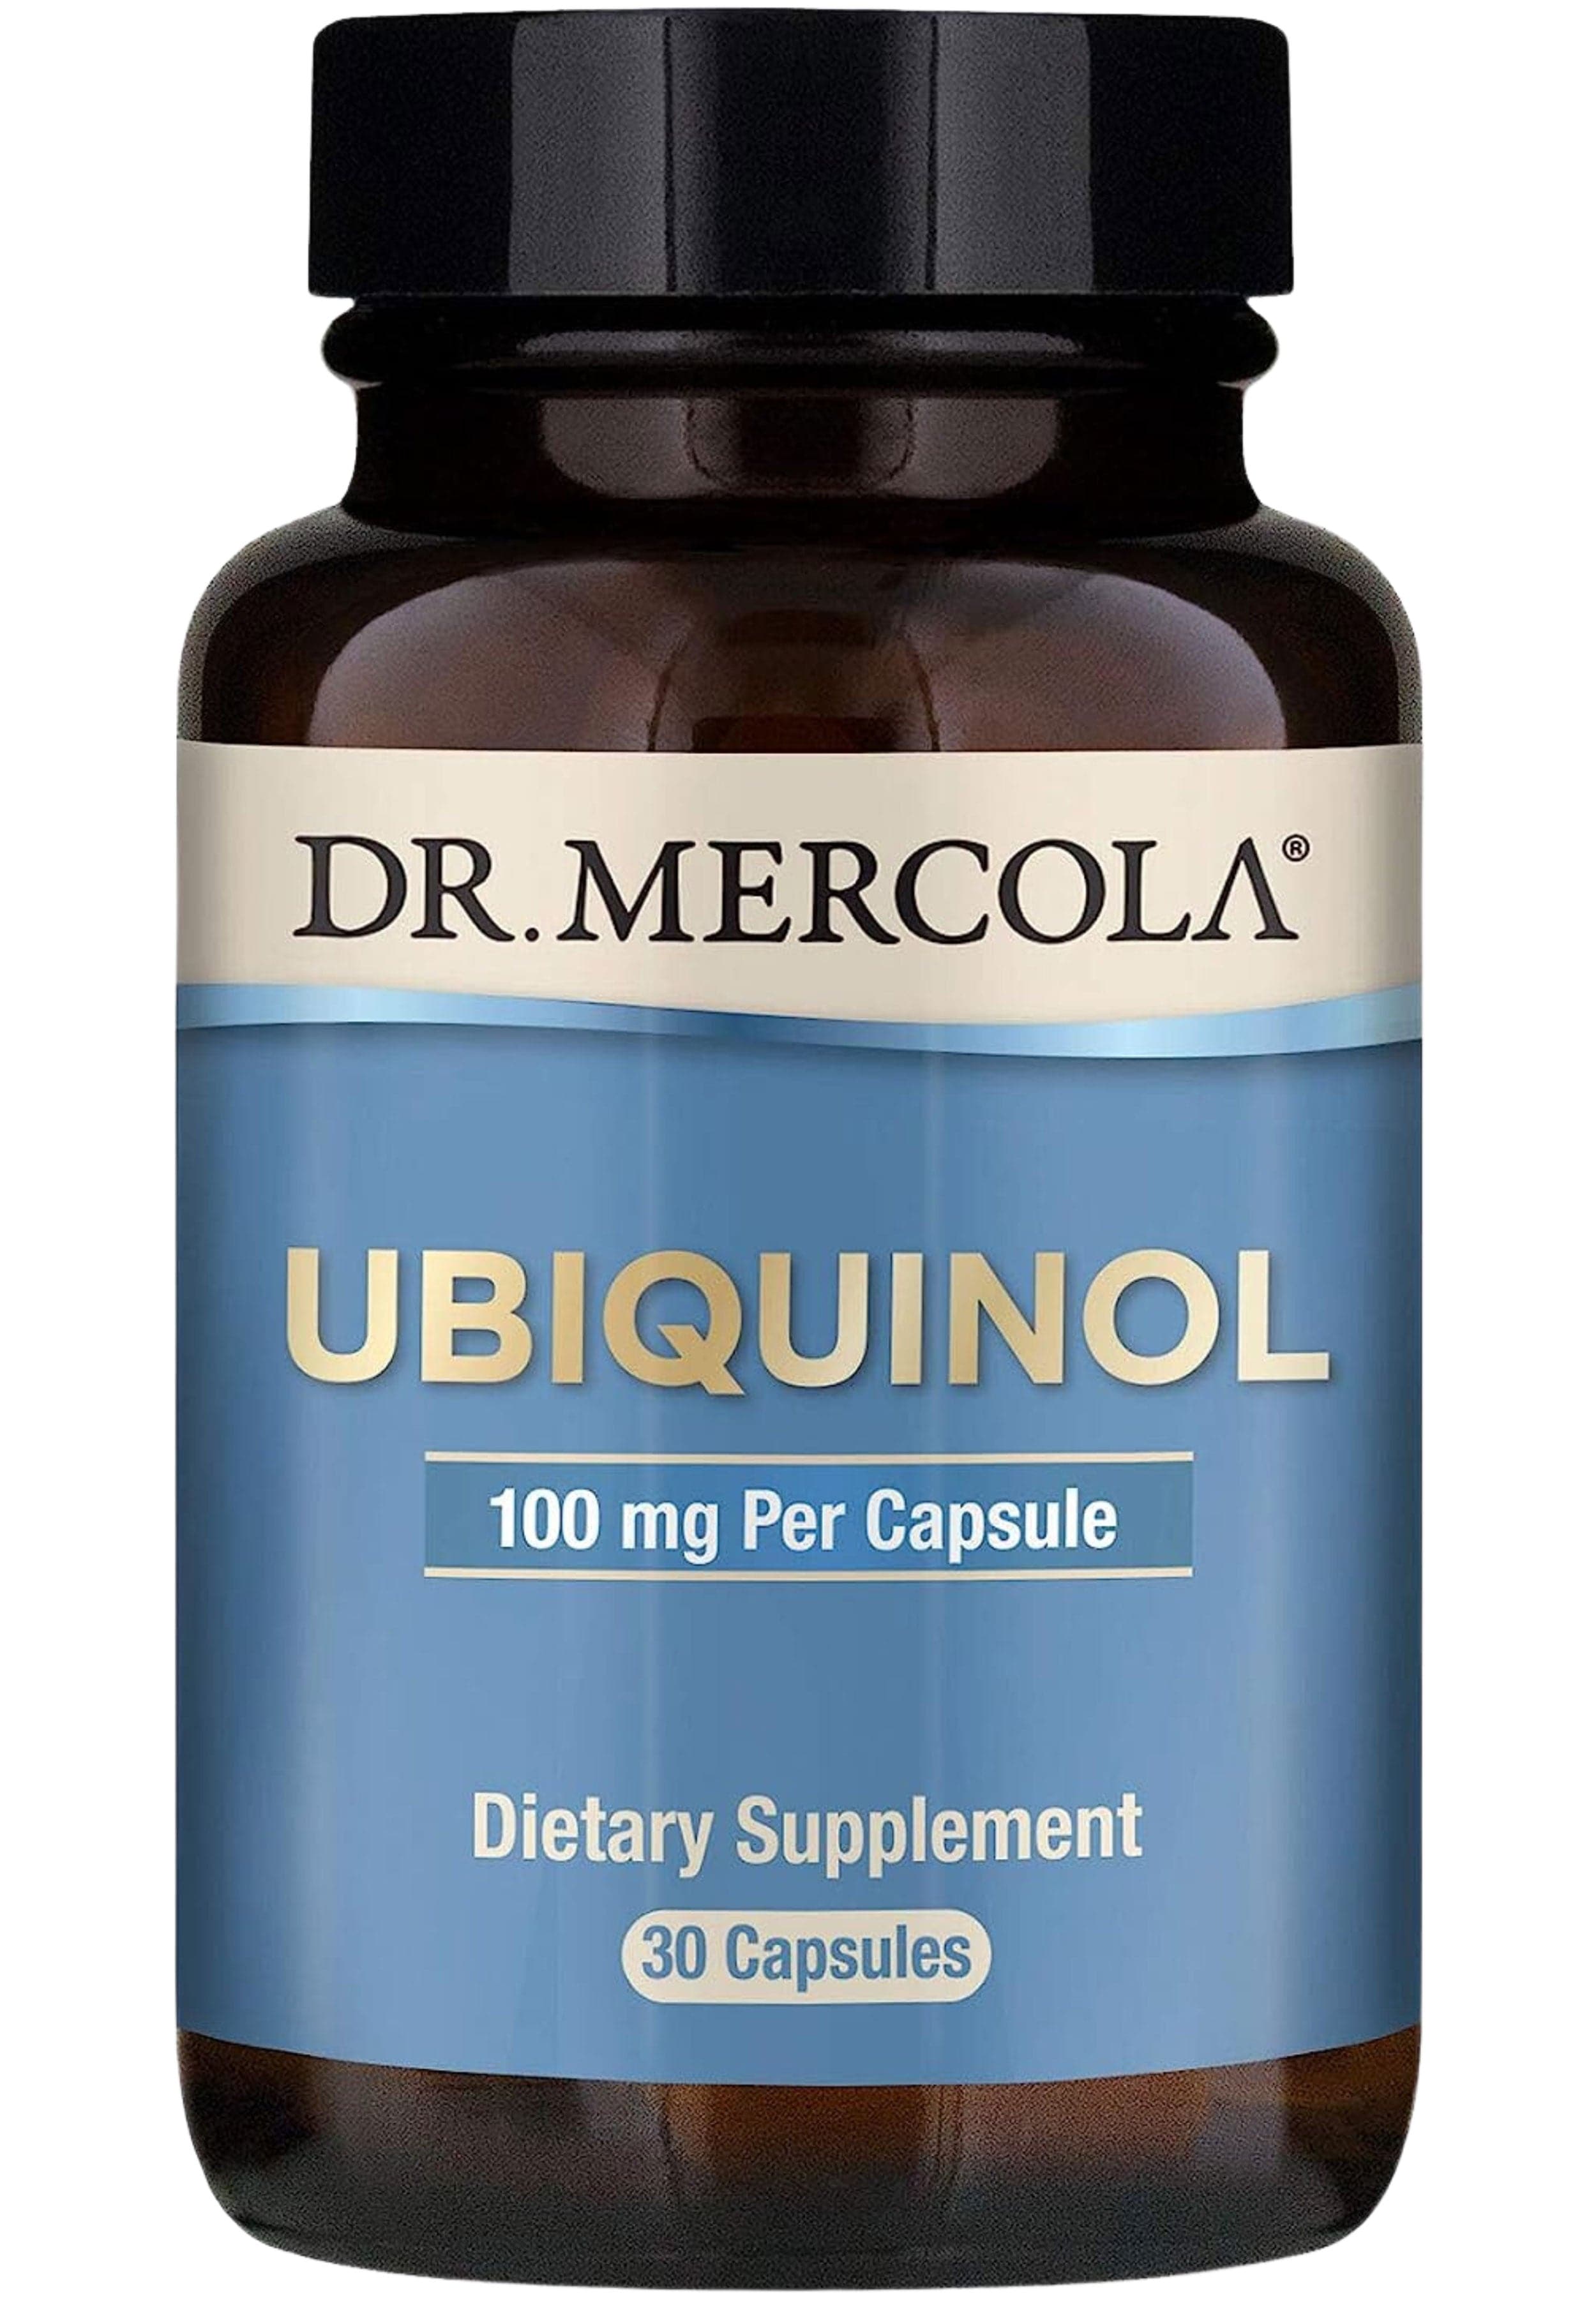 Dr. Mercola Ubiquinol 100 mg